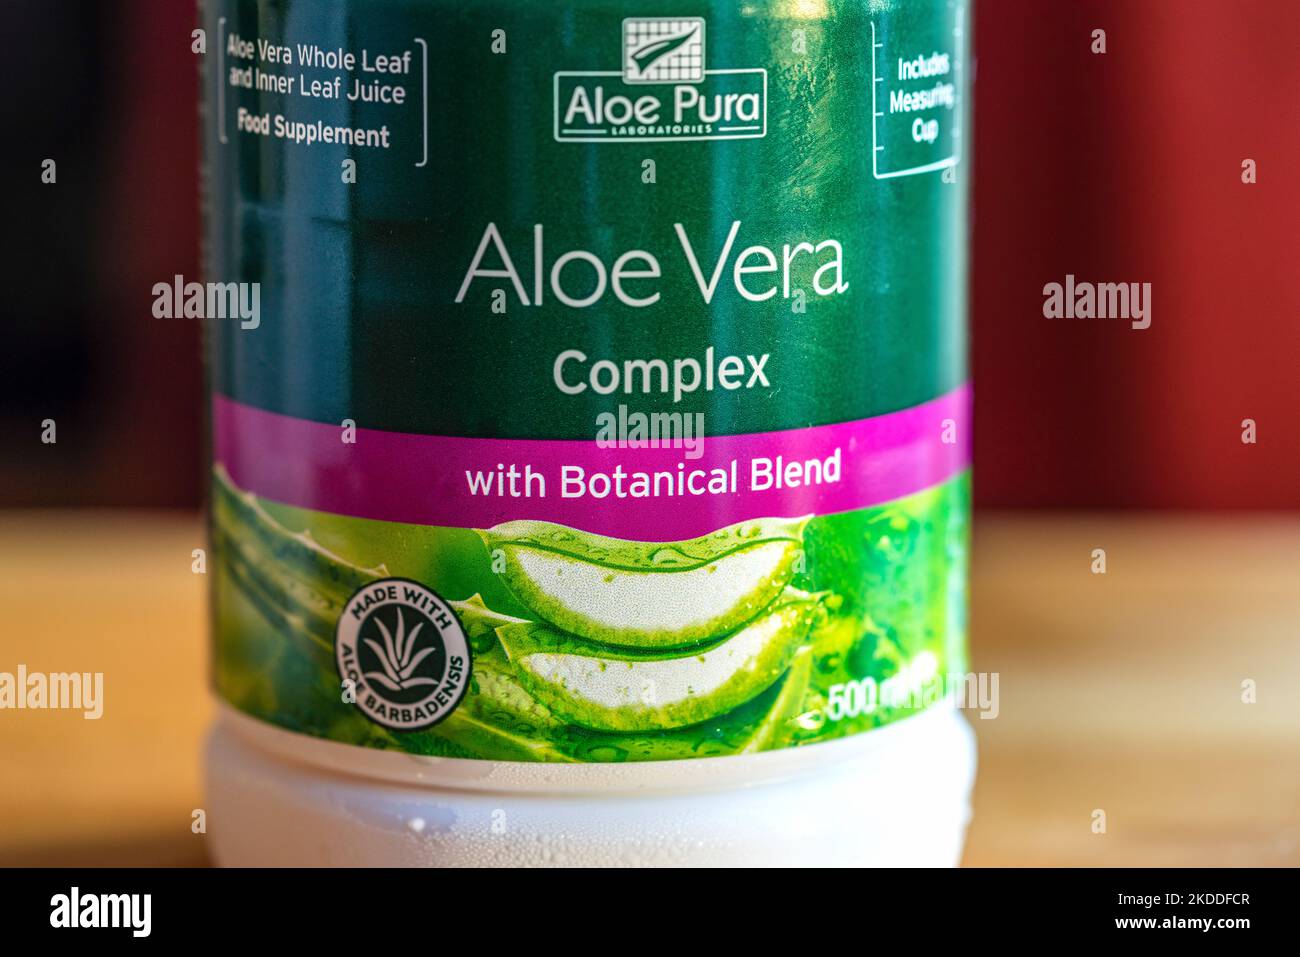 La etiqueta del jugo puro de Aloe Vera en una botella plástica, Reino Unido Foto de stock